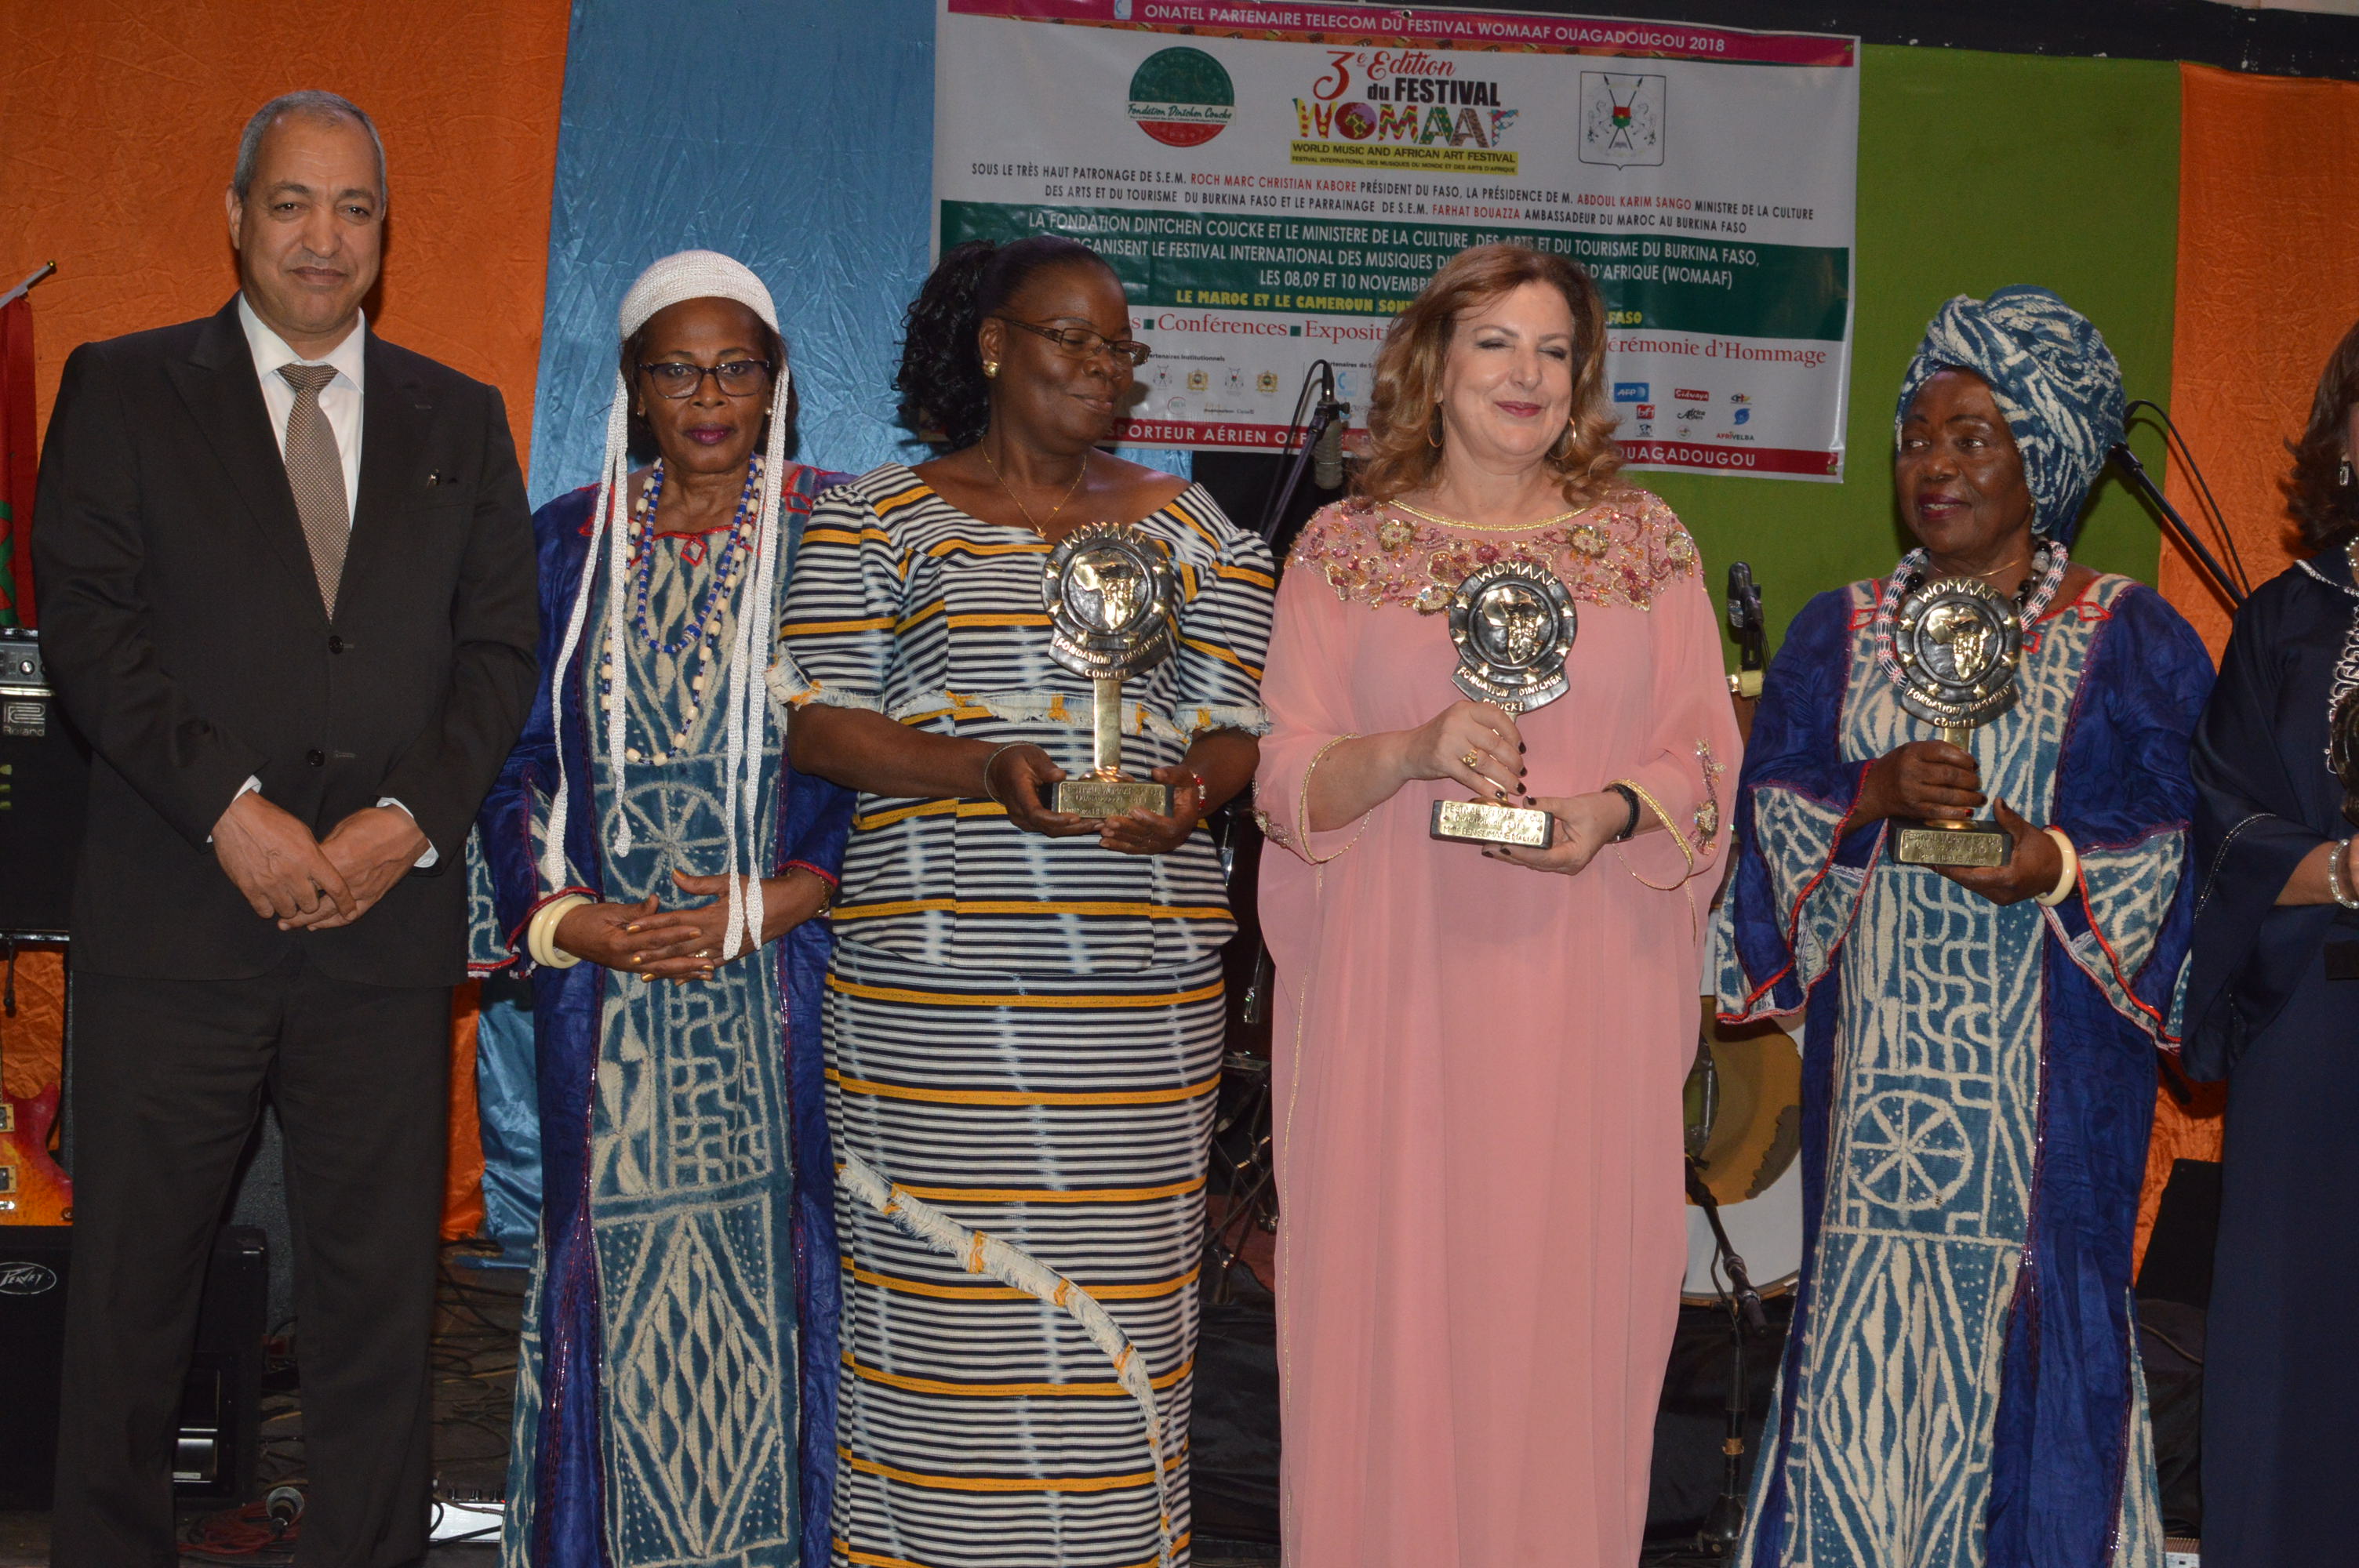  Clôture WOMAAF 2018: Un trophée d’hommage decerné au President du Faso, Roch Kaboré et à d’autres personnalités.